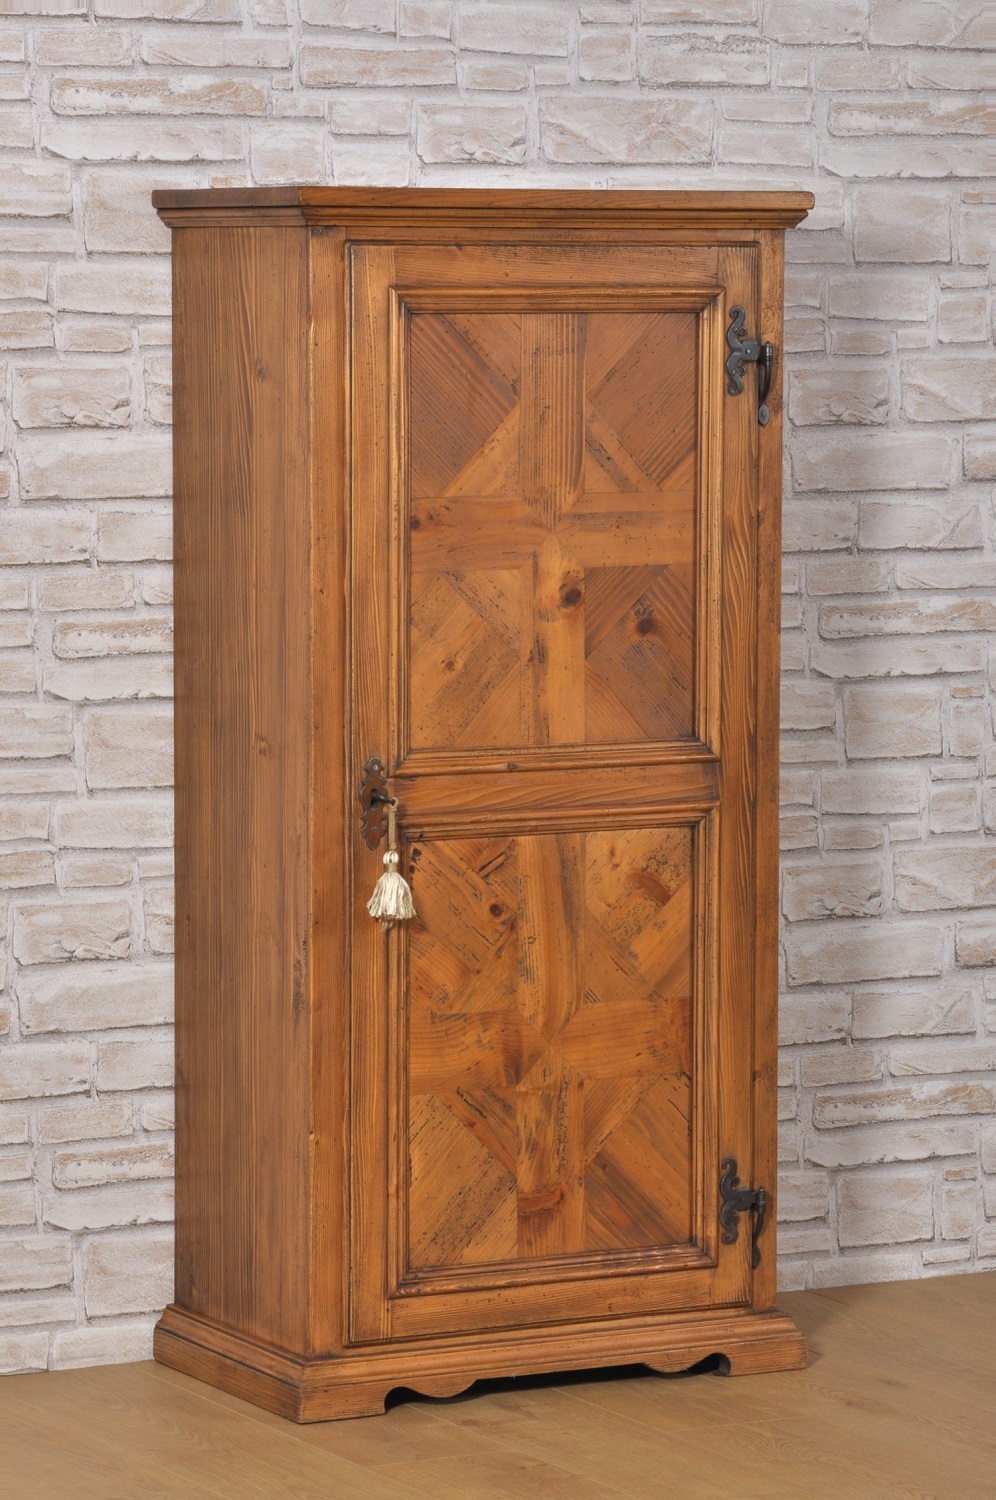 dispensa armadio intarsiato in abete nello stile Ampezzano riprodotto dall’ originale risalente alla seconda metà del 1600 struttura una anta di piccole dimensioni con zoccolo aperto